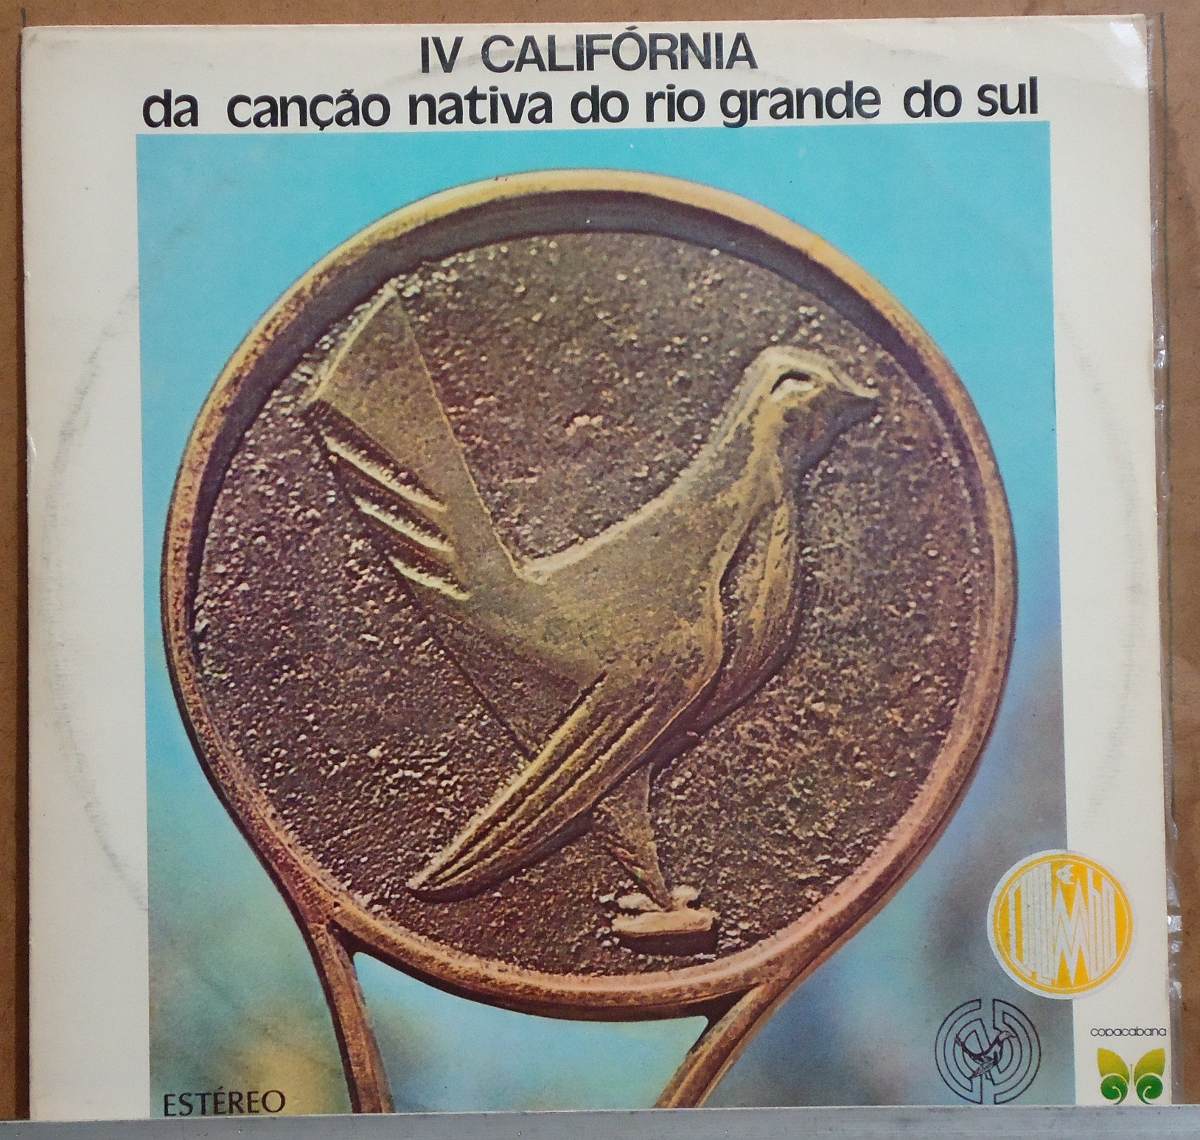 LP 4ª Califórnia da Canção Nativa